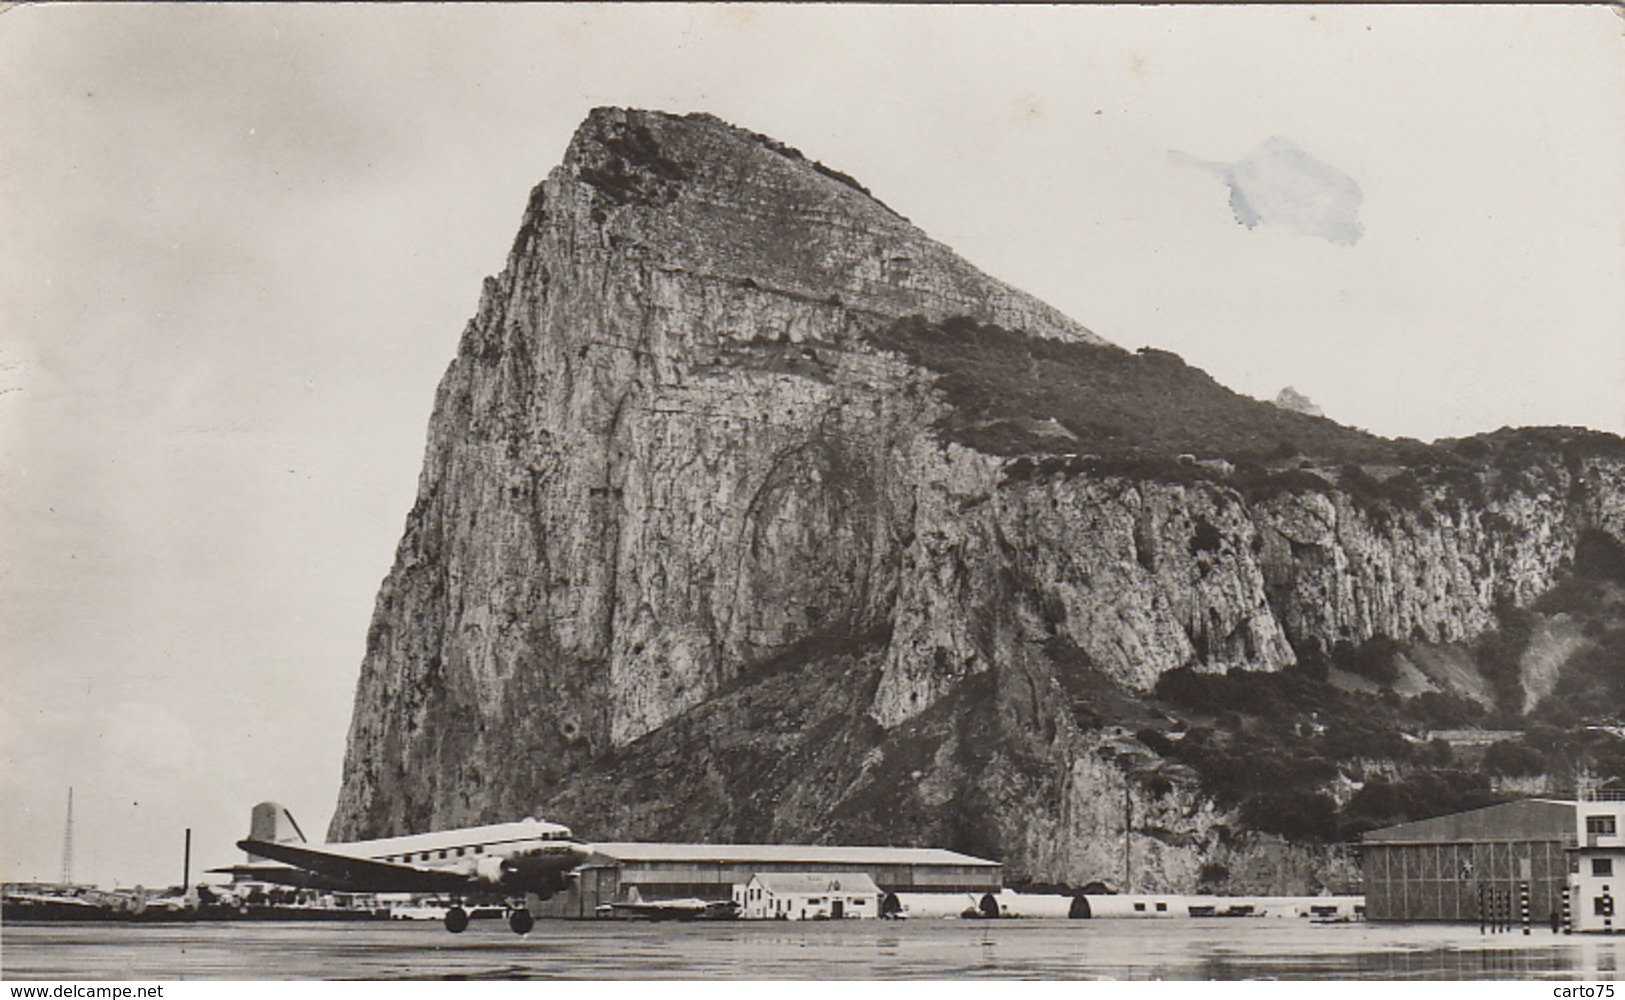 Aviation - Avions - Aéroport Rocher De Gilbraltar - Rock Of Gibraltar From Airfield - 1957 - 1946-....: Ere Moderne